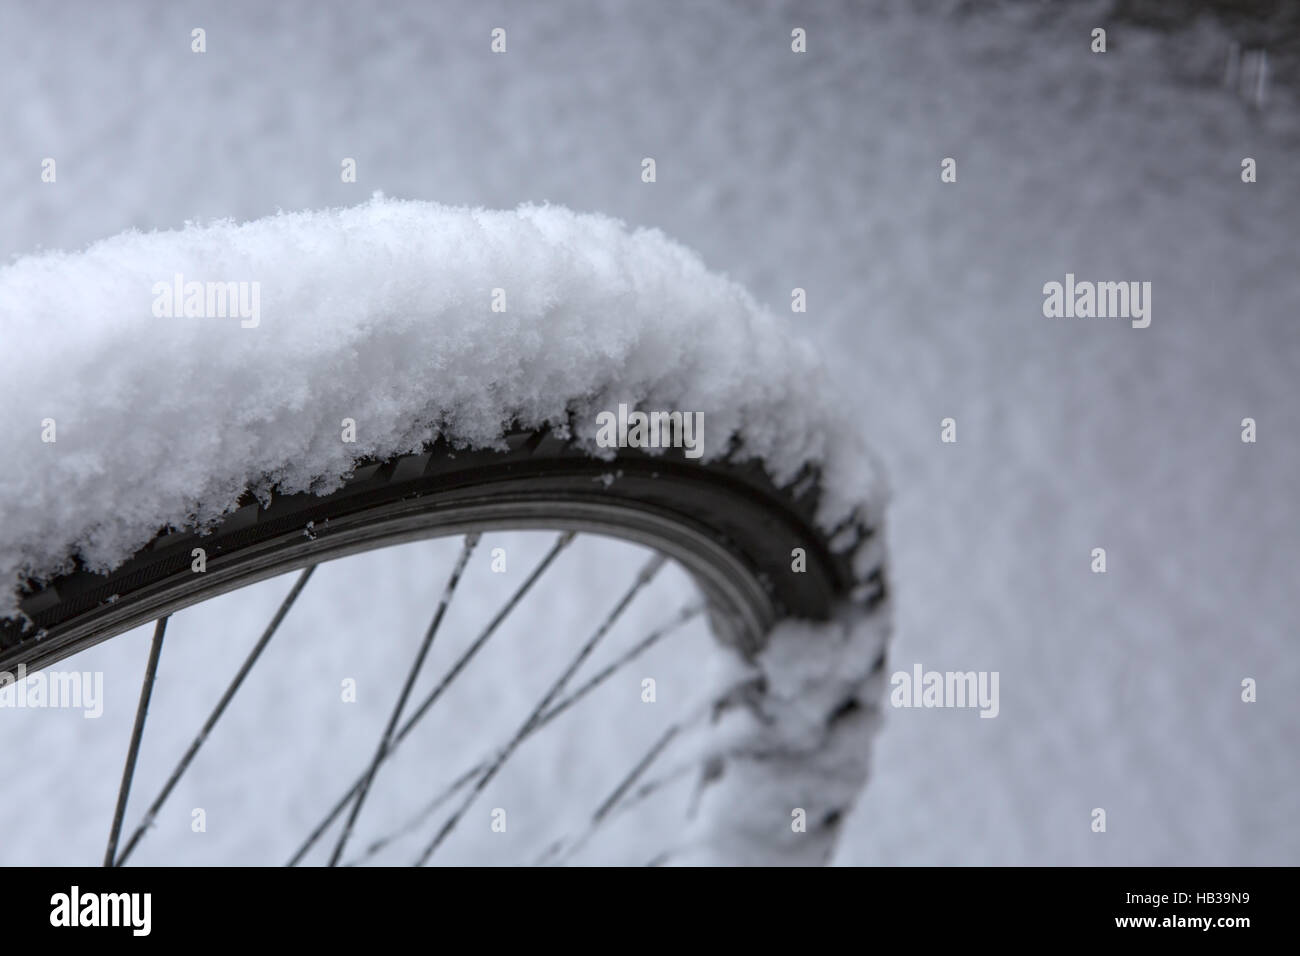 Bike wheel tire on white snow. Stock Photo